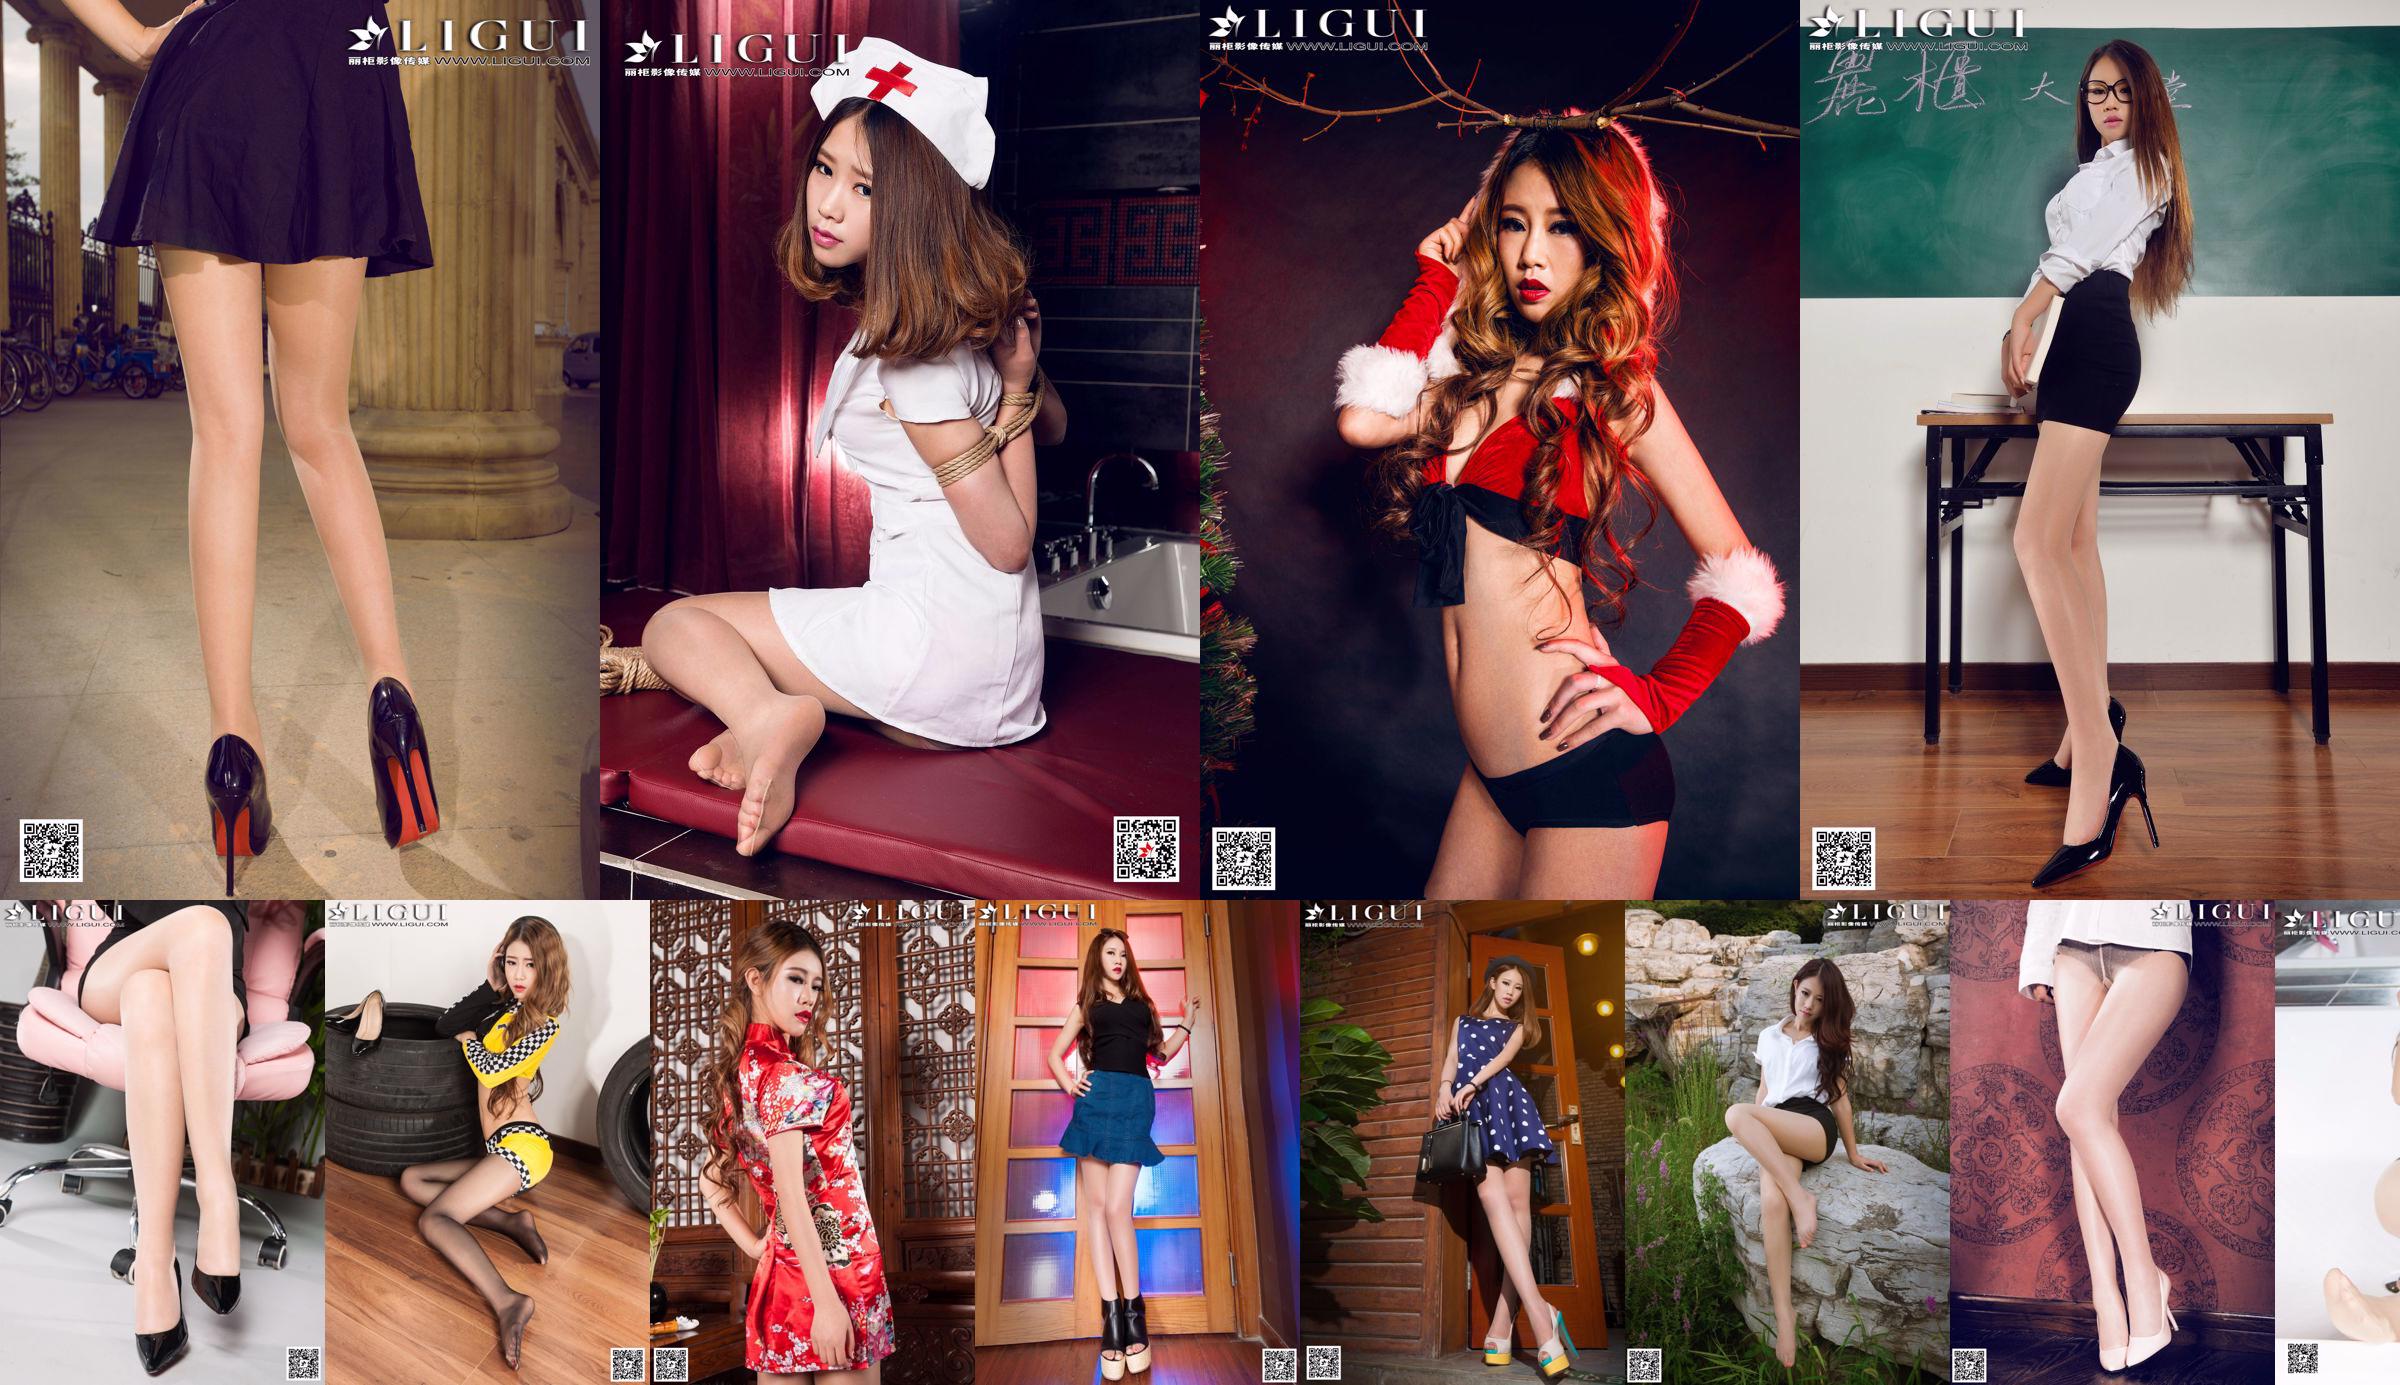 [丽 柜 贵 足 LiGui] Model Yuhan "Street Fashion Miniskirt Girl" kaki indah dan gambar foto kaki giok No.2767b8 Halaman 2